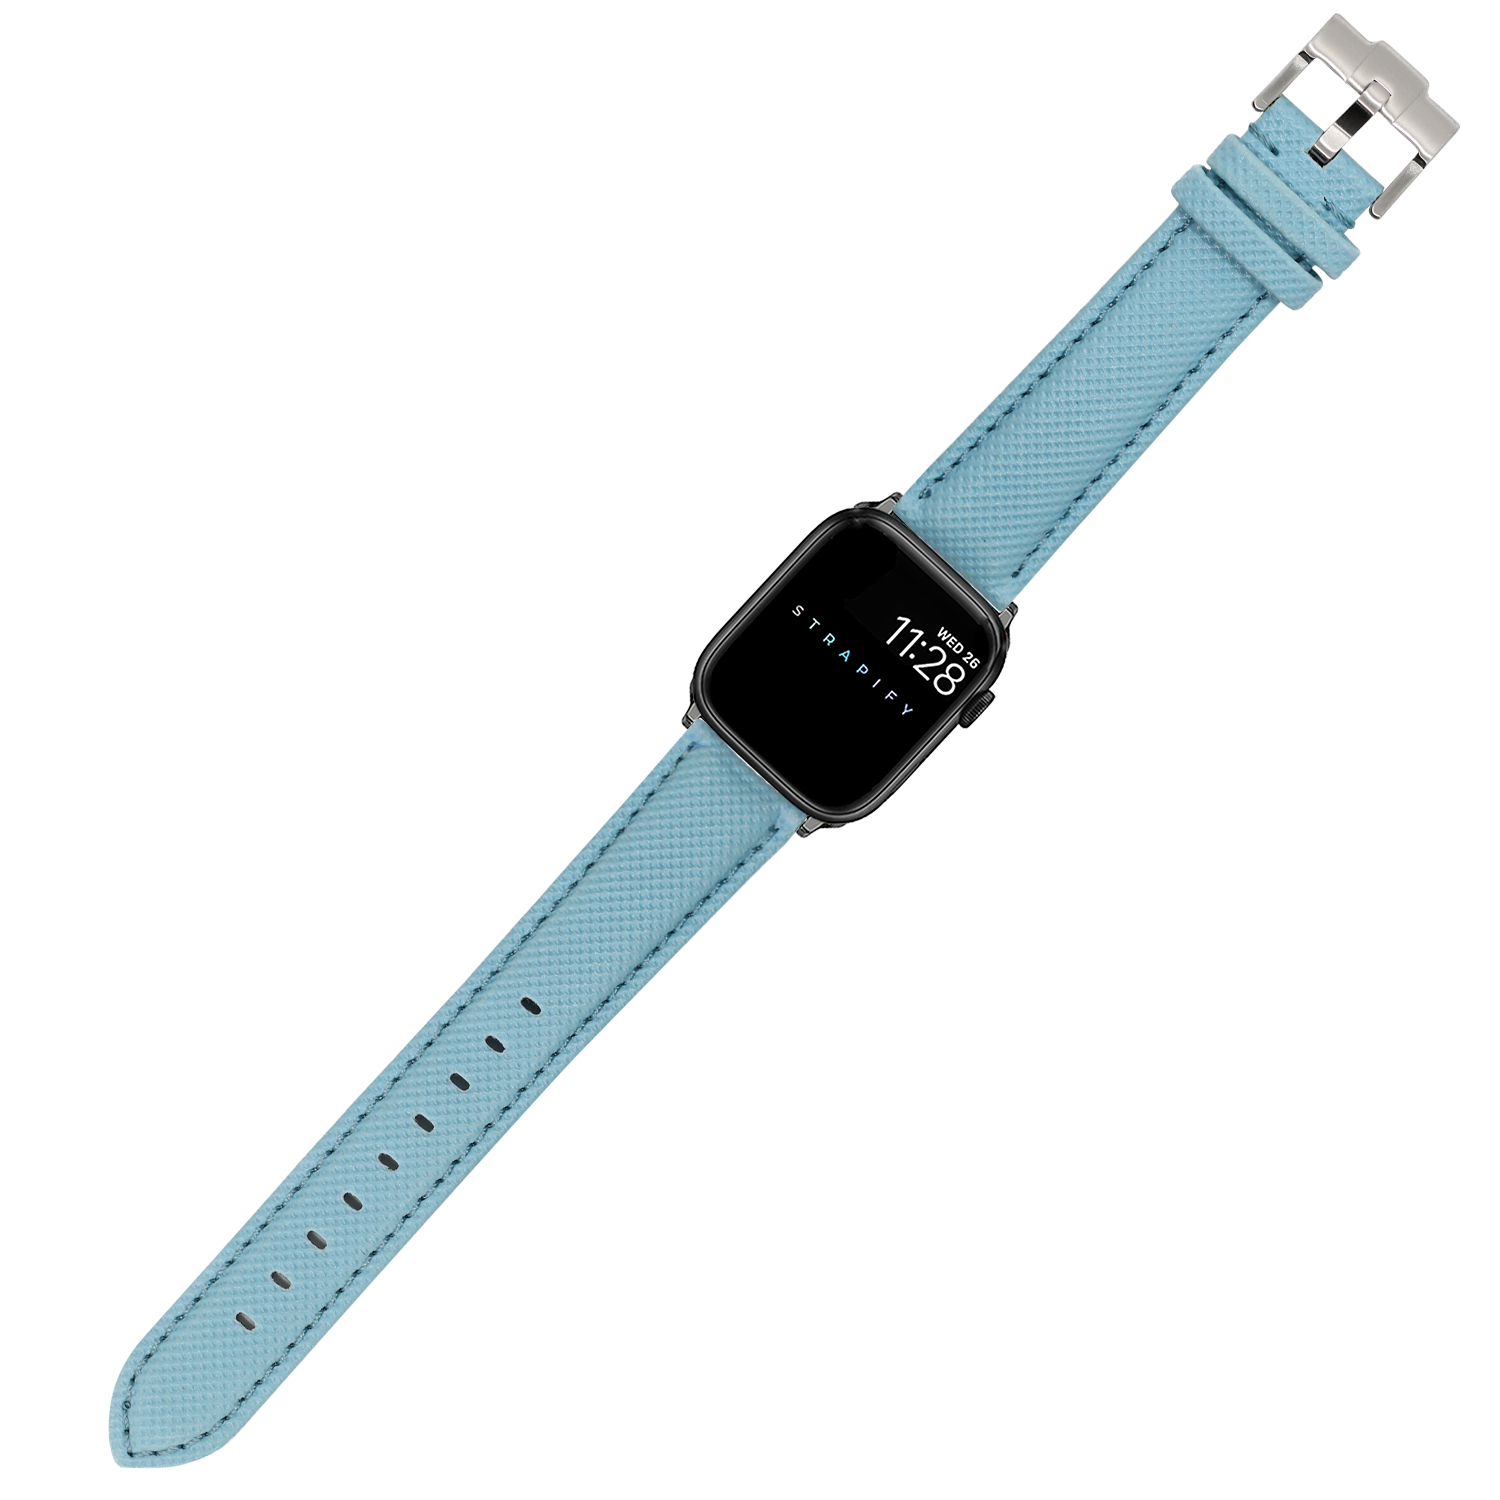 [Apple Watch] Sailcloth - Sky Blue